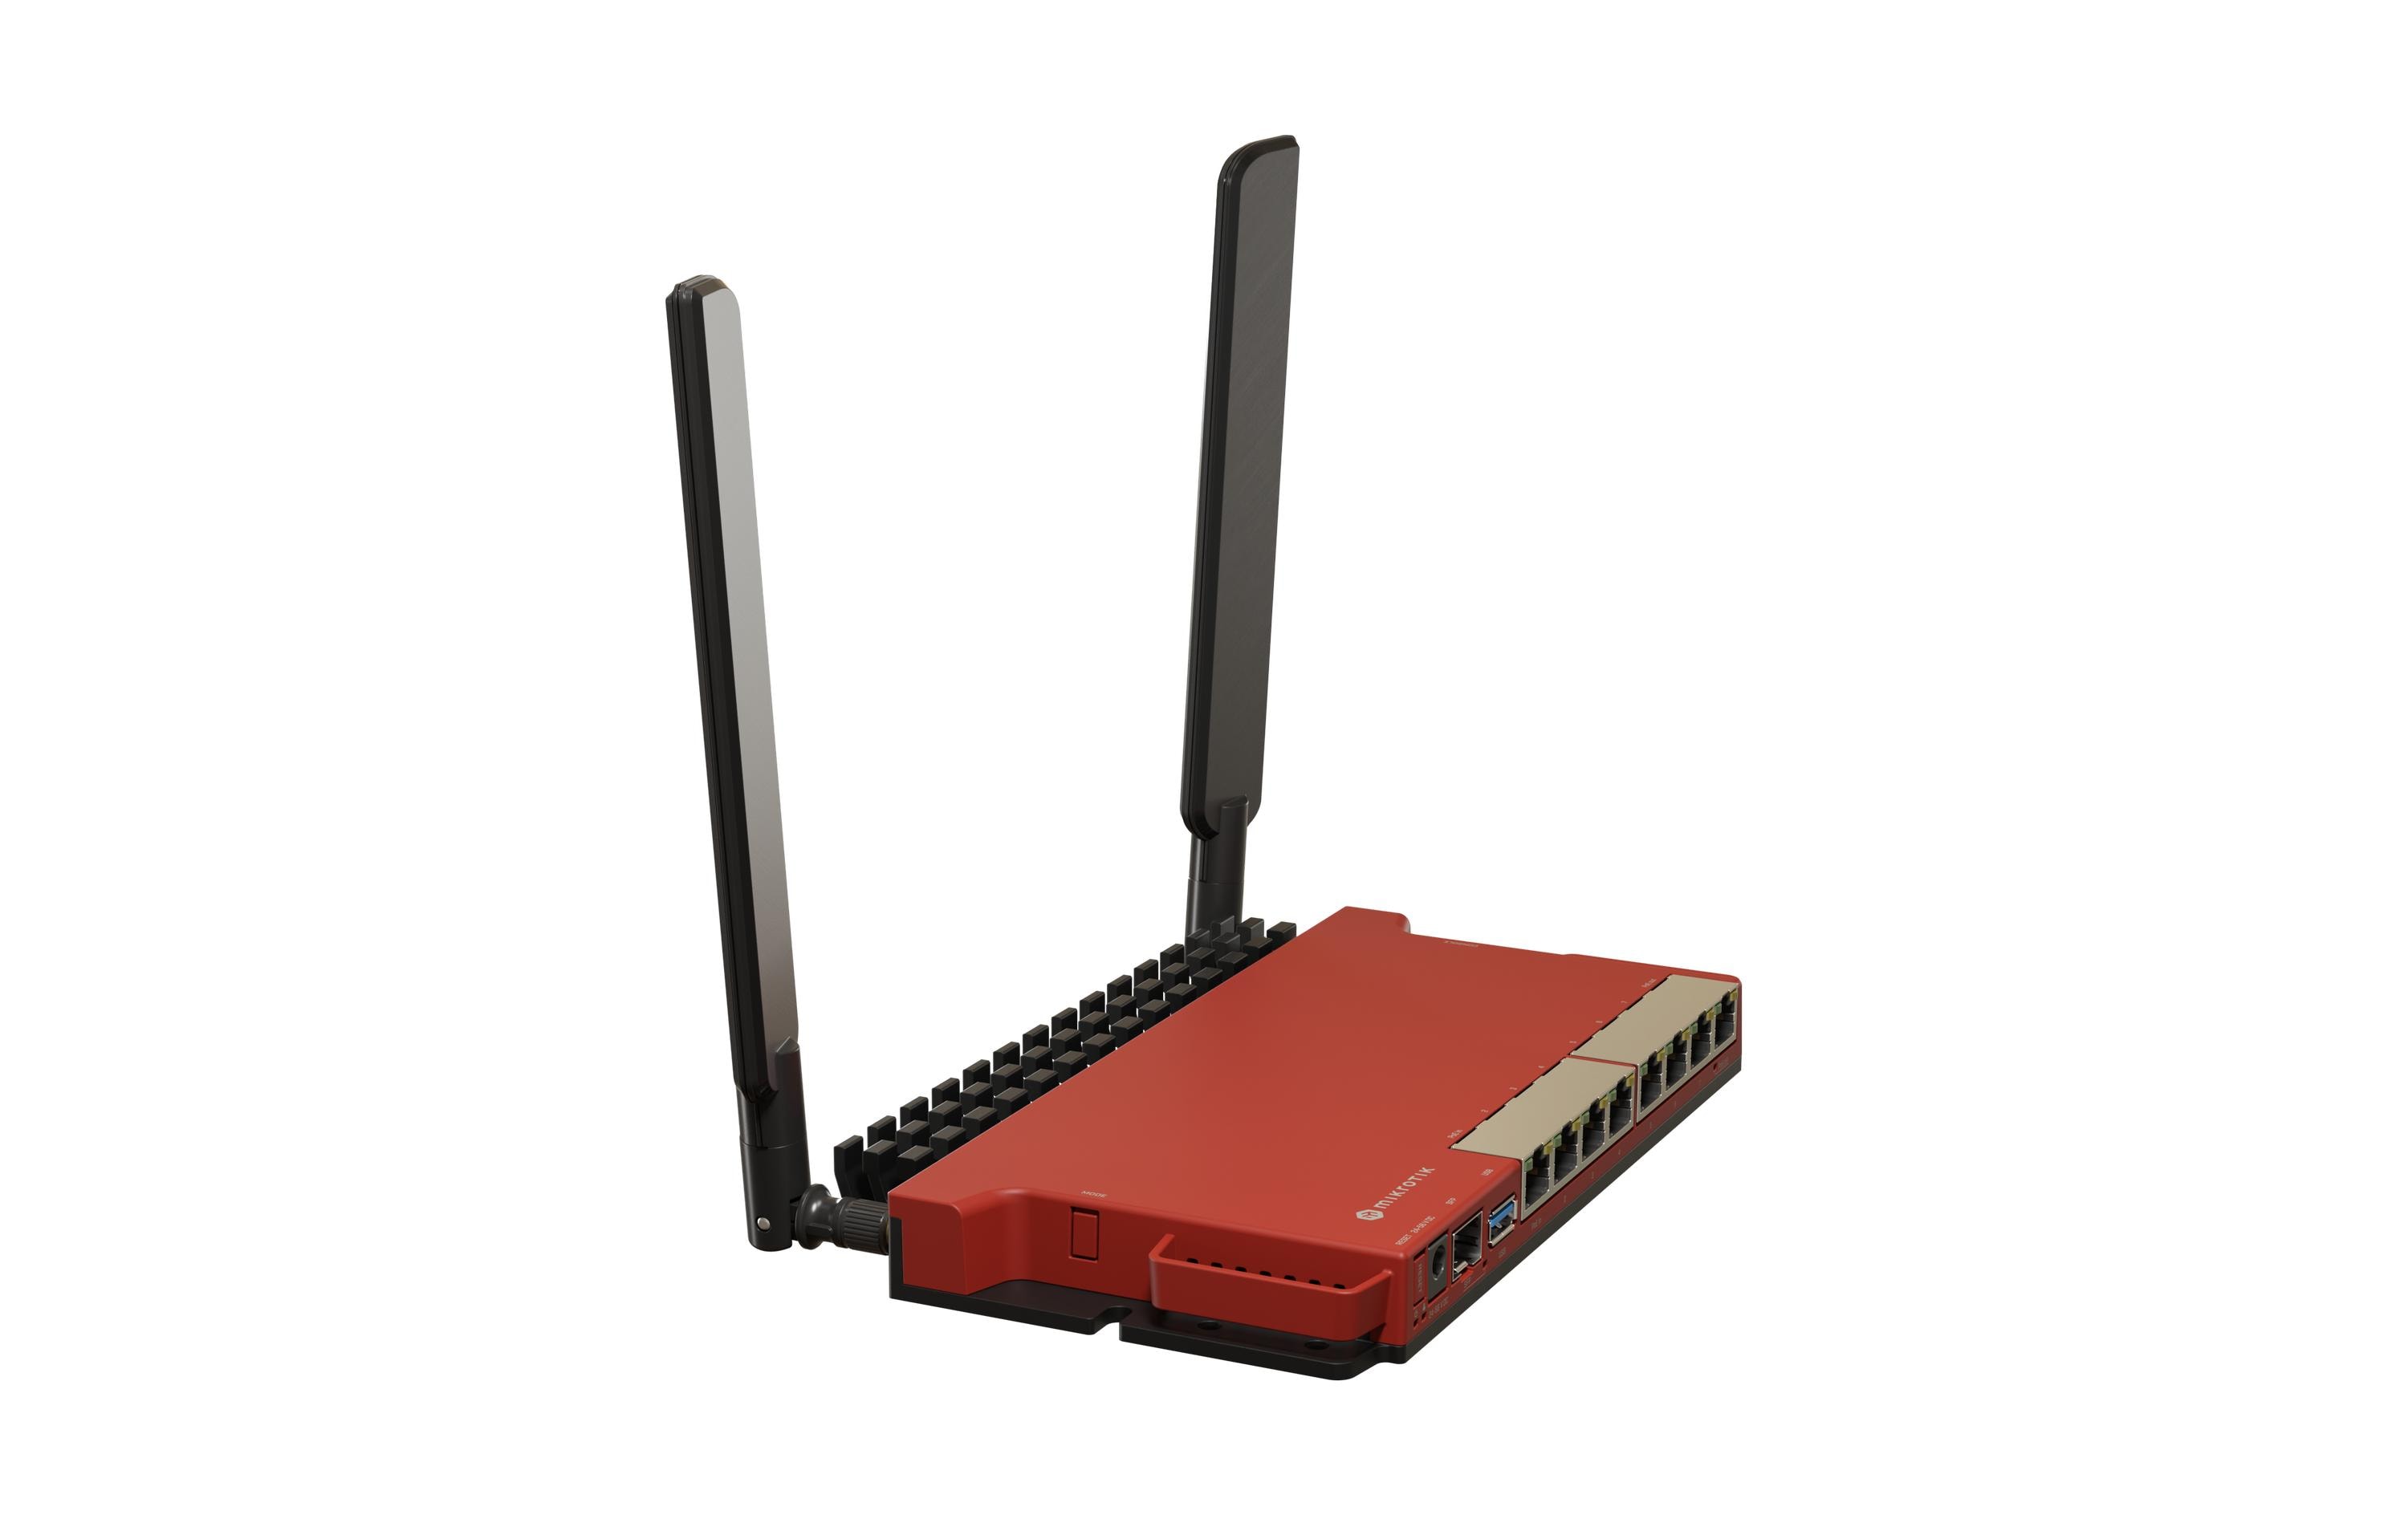 MikroTik Router L009UiGS-2HaxD-IN 2.4 GHz ax dual-chain Wi-Fi